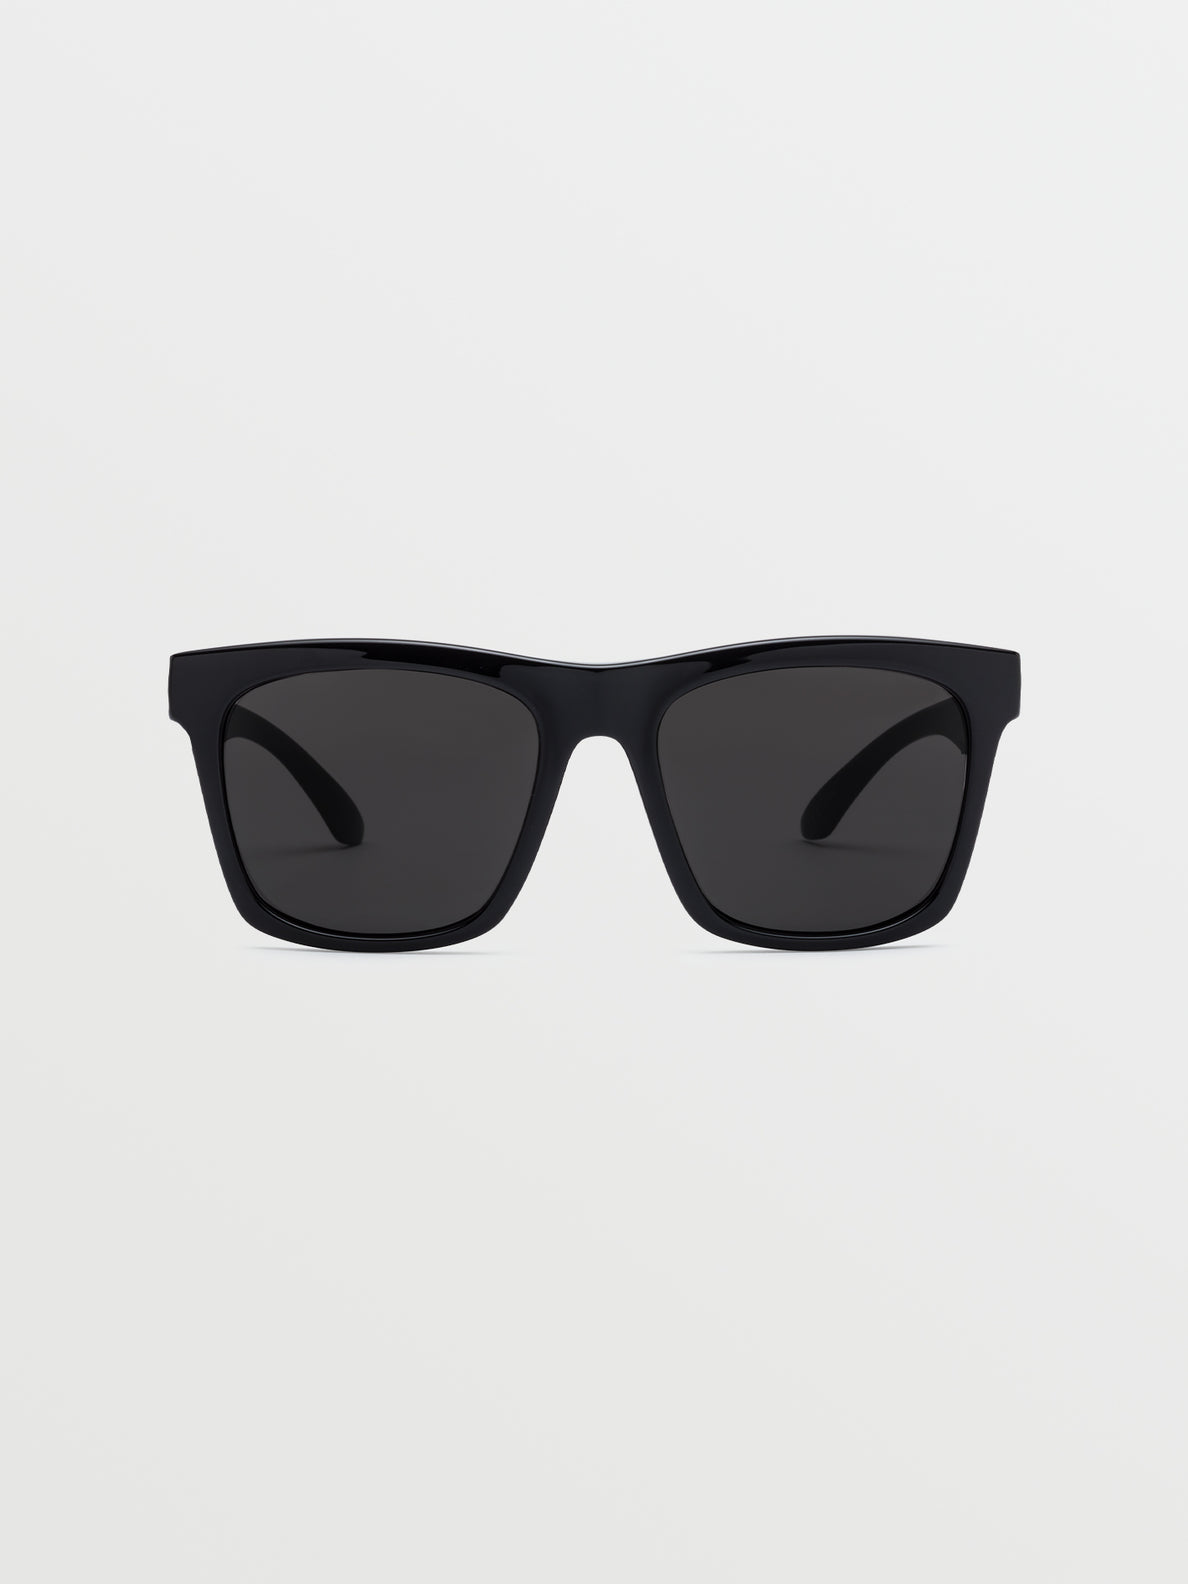 Jewel Sunglasses - Gloss Black/Gray (VE02500201_0000) [2]